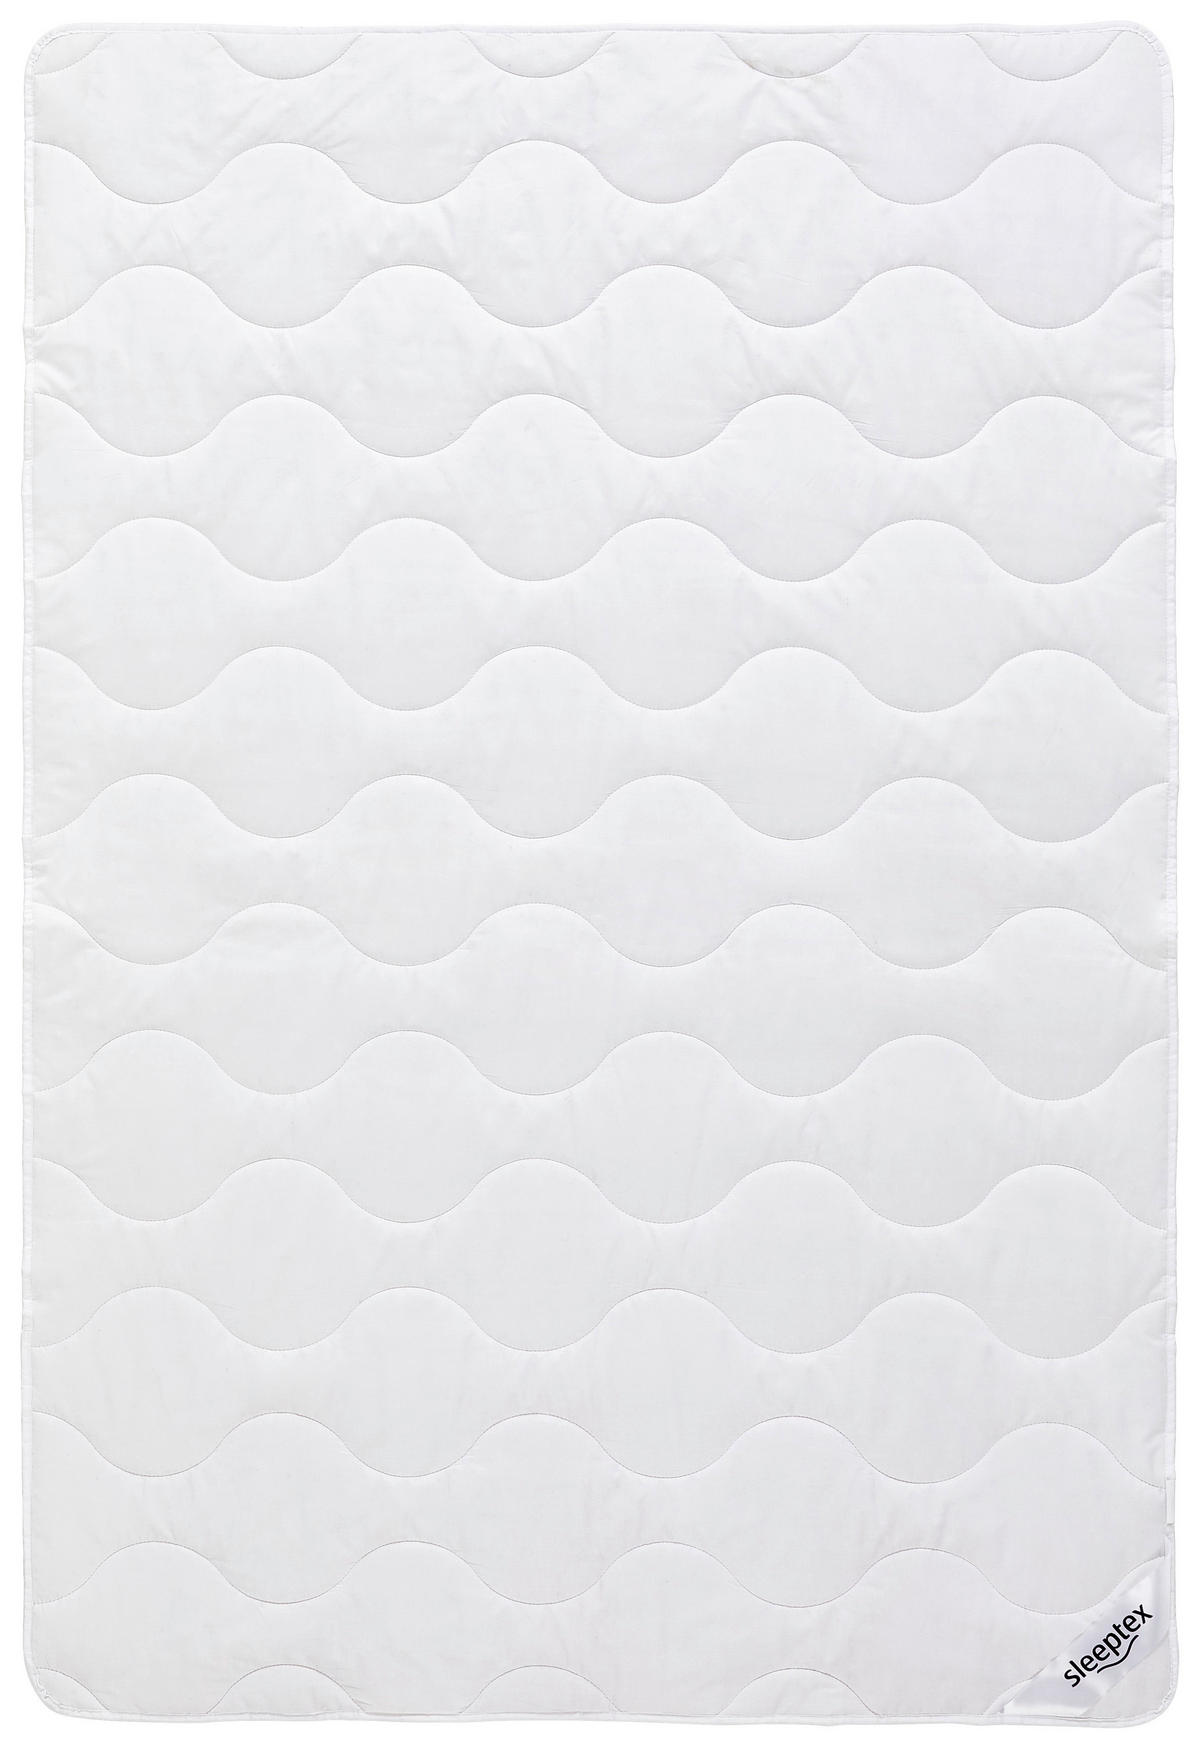 SOMMERBETT   135/200 cm   - Weiß, KONVENTIONELL, Textil (135/200cm) - Sleeptex